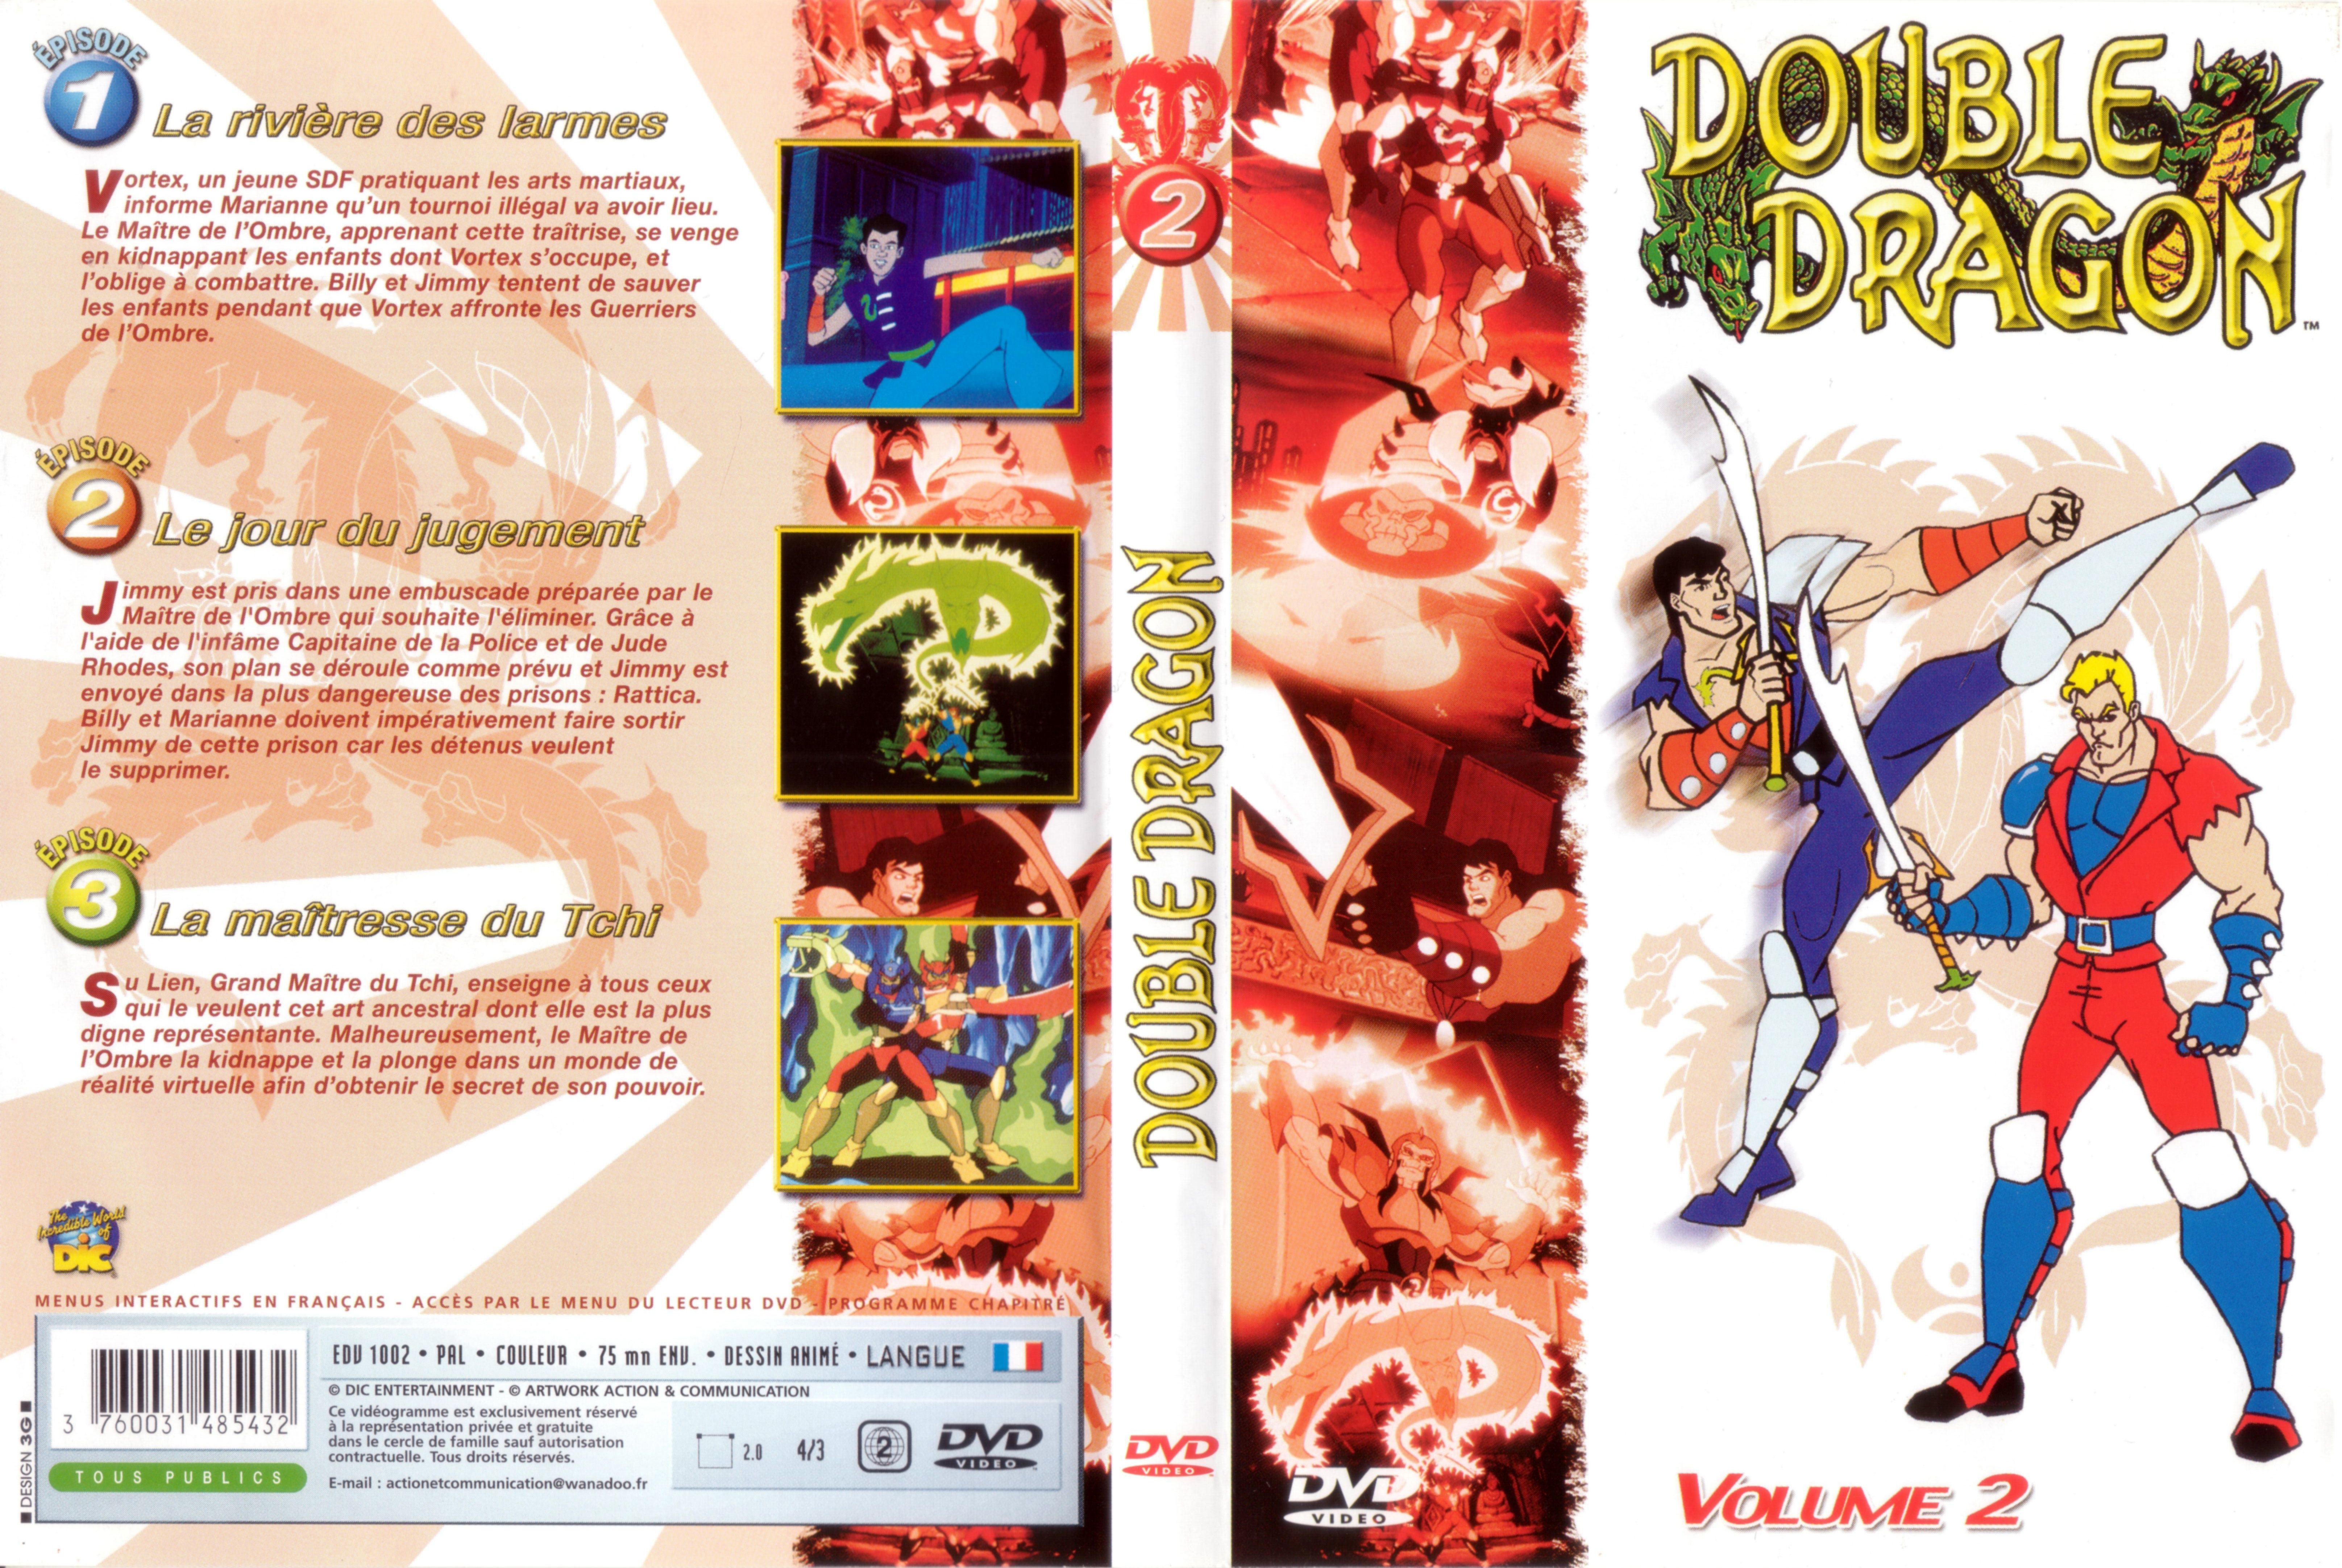 Jaquette DVD Double dragon vol 2